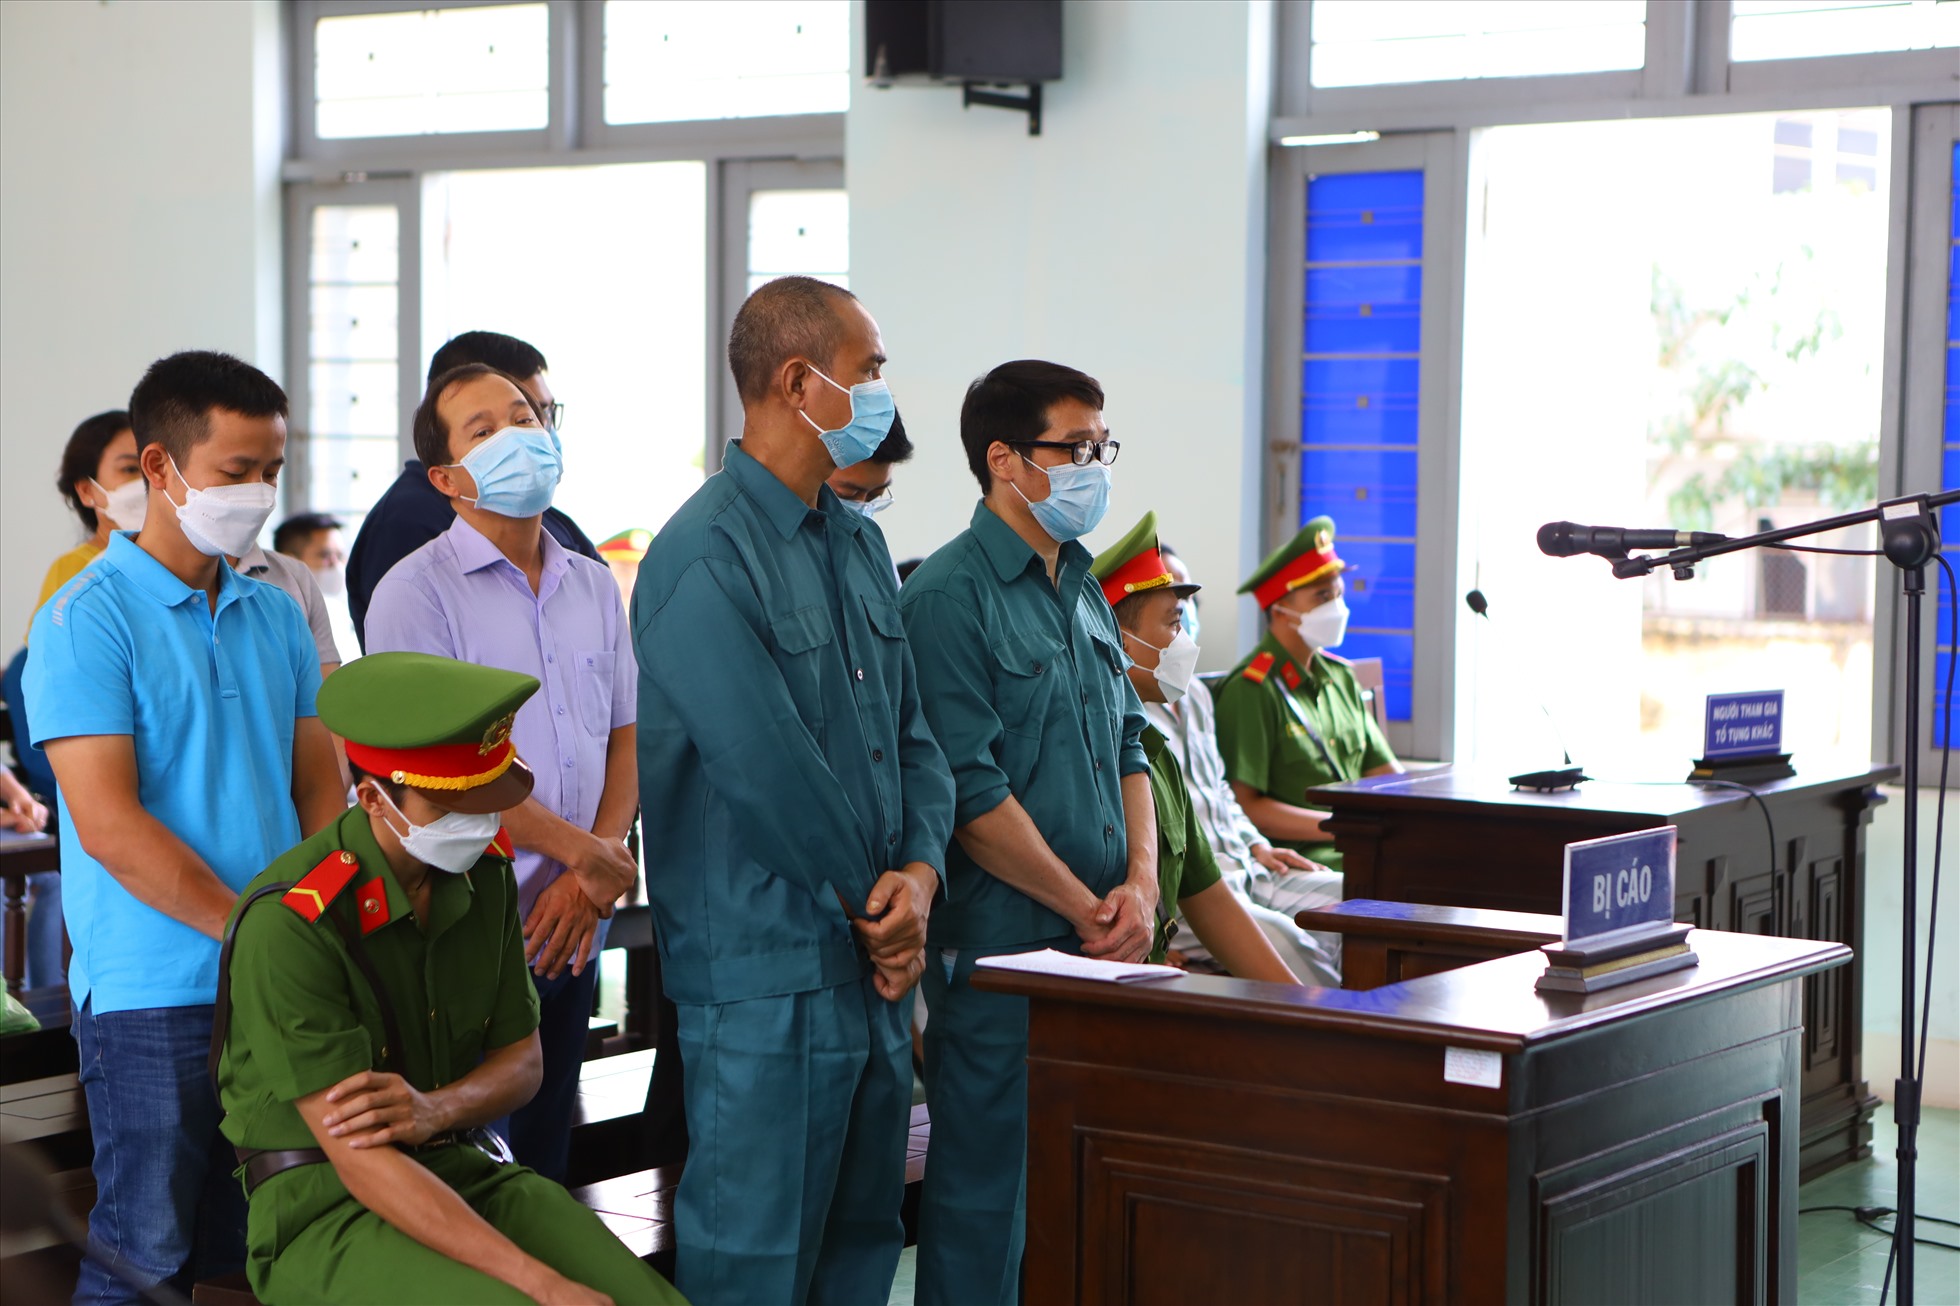 Luyện Xuân Tràng (đứng hàng đầu, đeo mắt kính) tại phiên tòa. Ảnh: DT